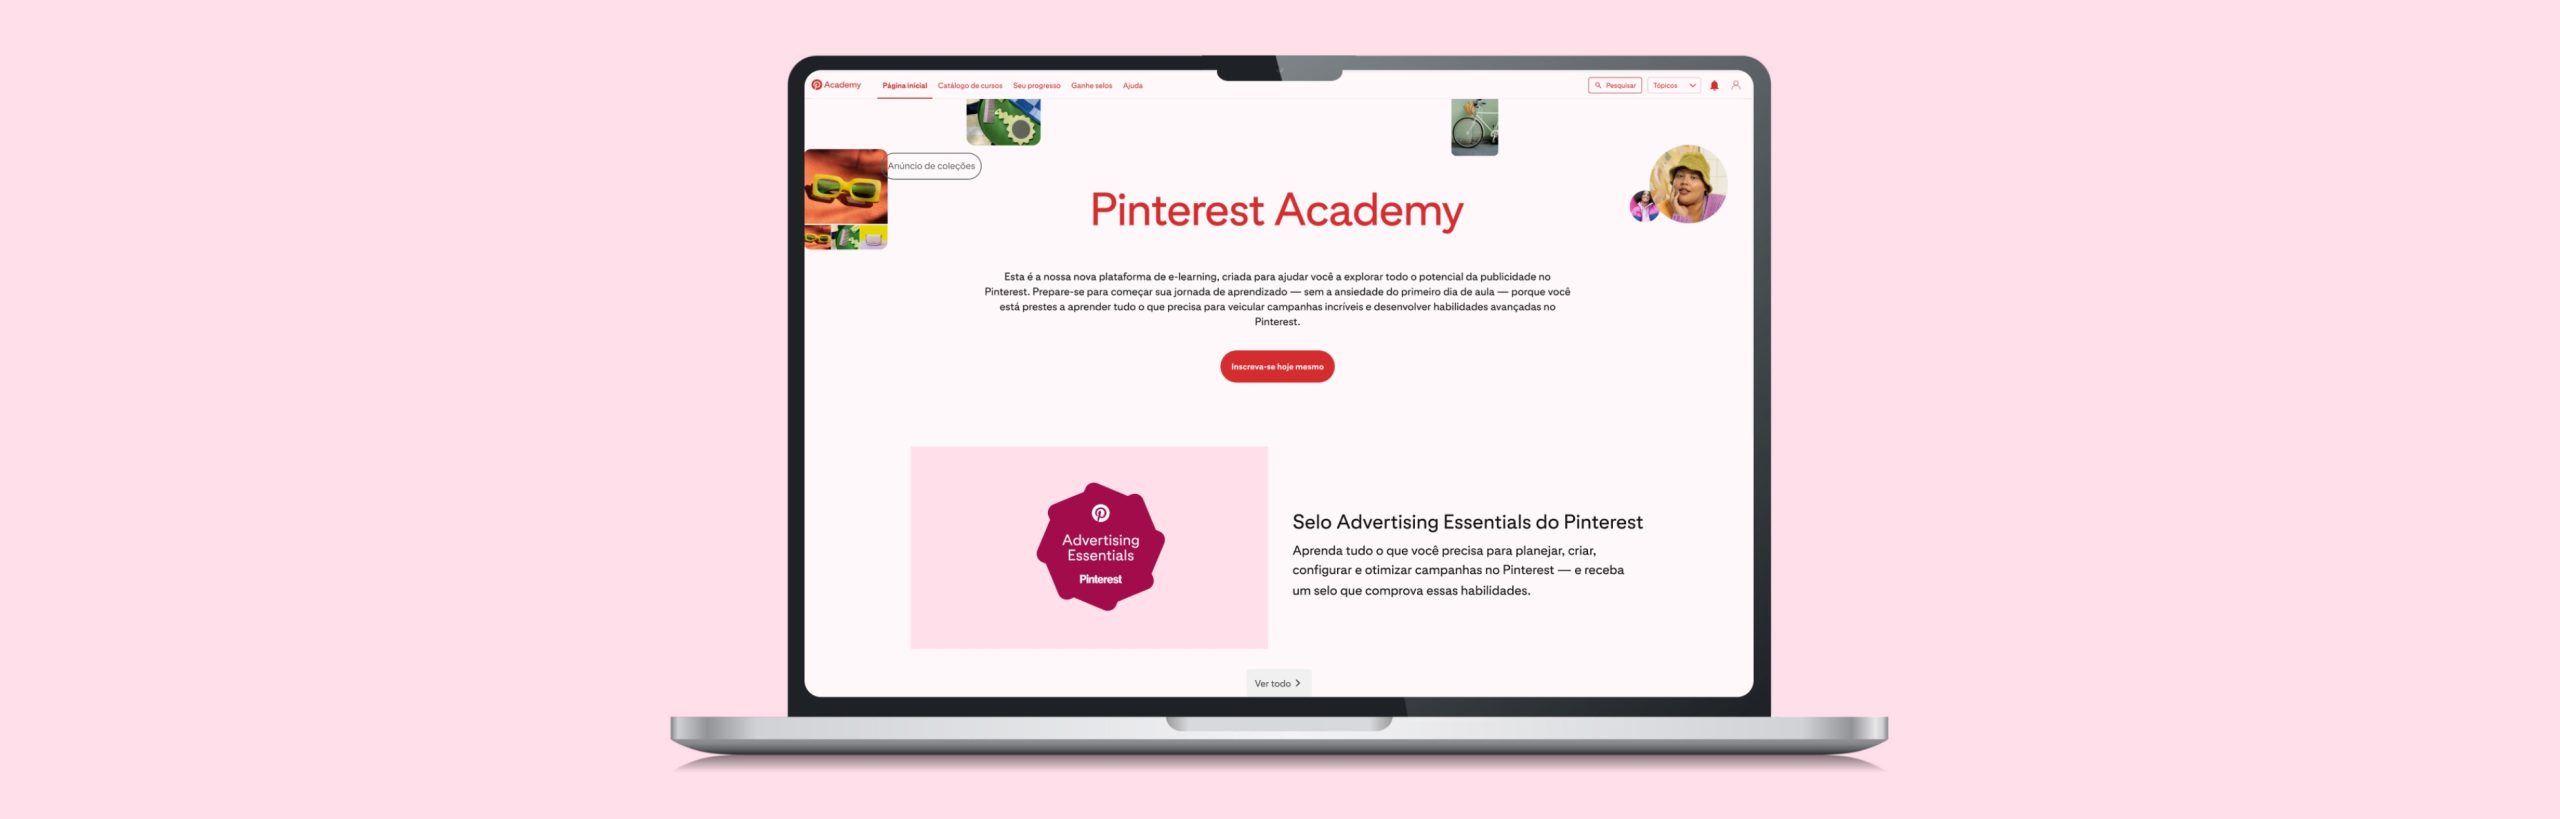 Pinterest Academy oferece cursos gratuitos no Brasil